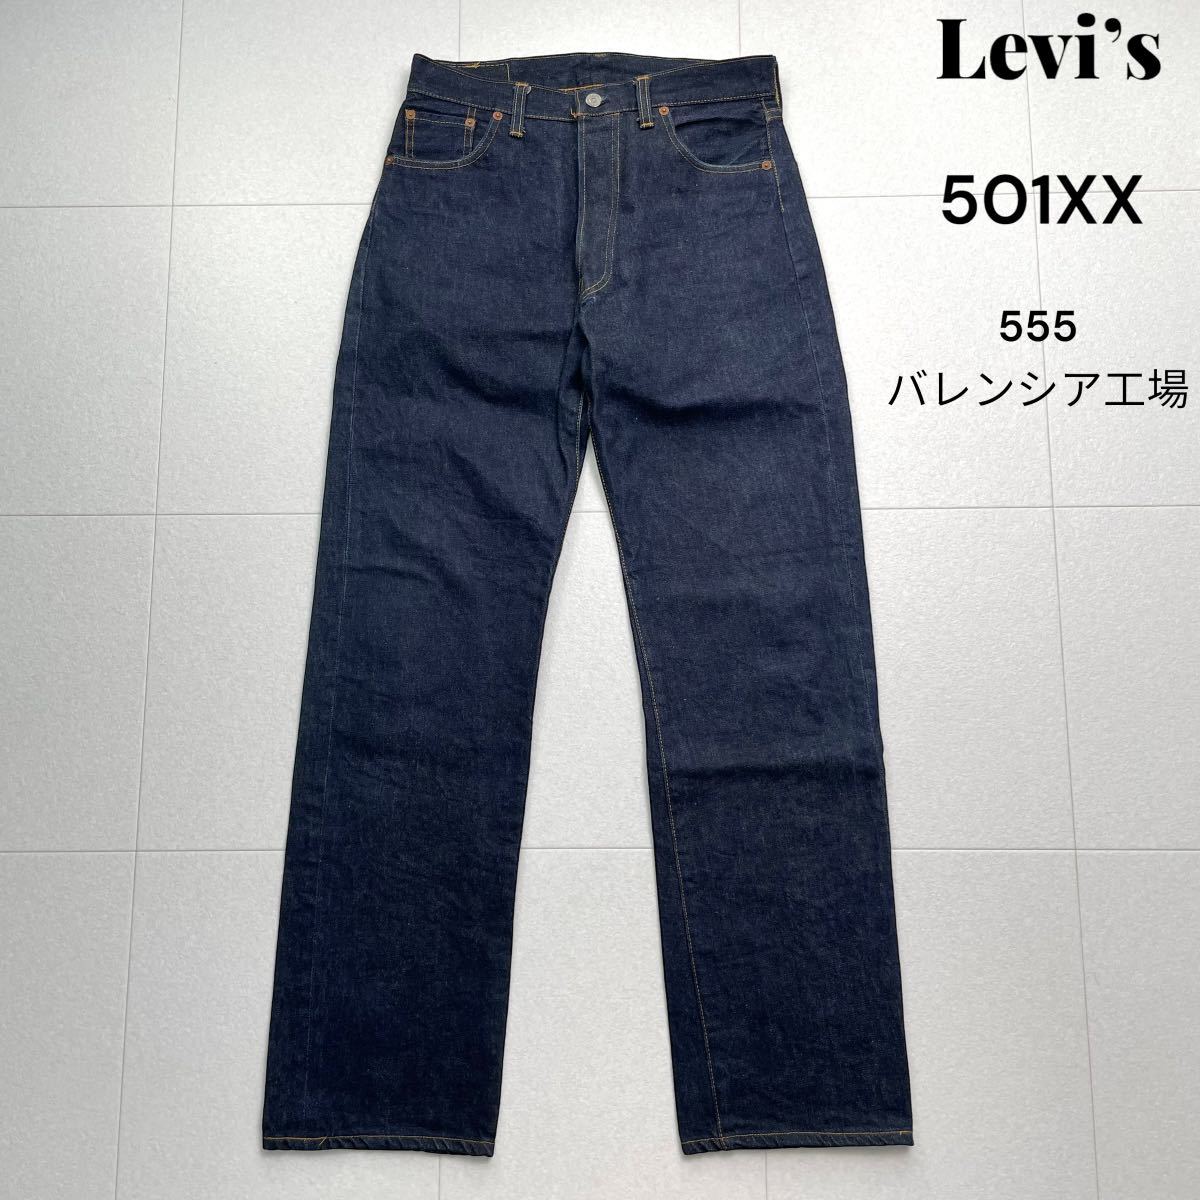 豪奢な 501XX LEVI'S かーくん様専用 真紺 バレンシア工場 紙パッチ